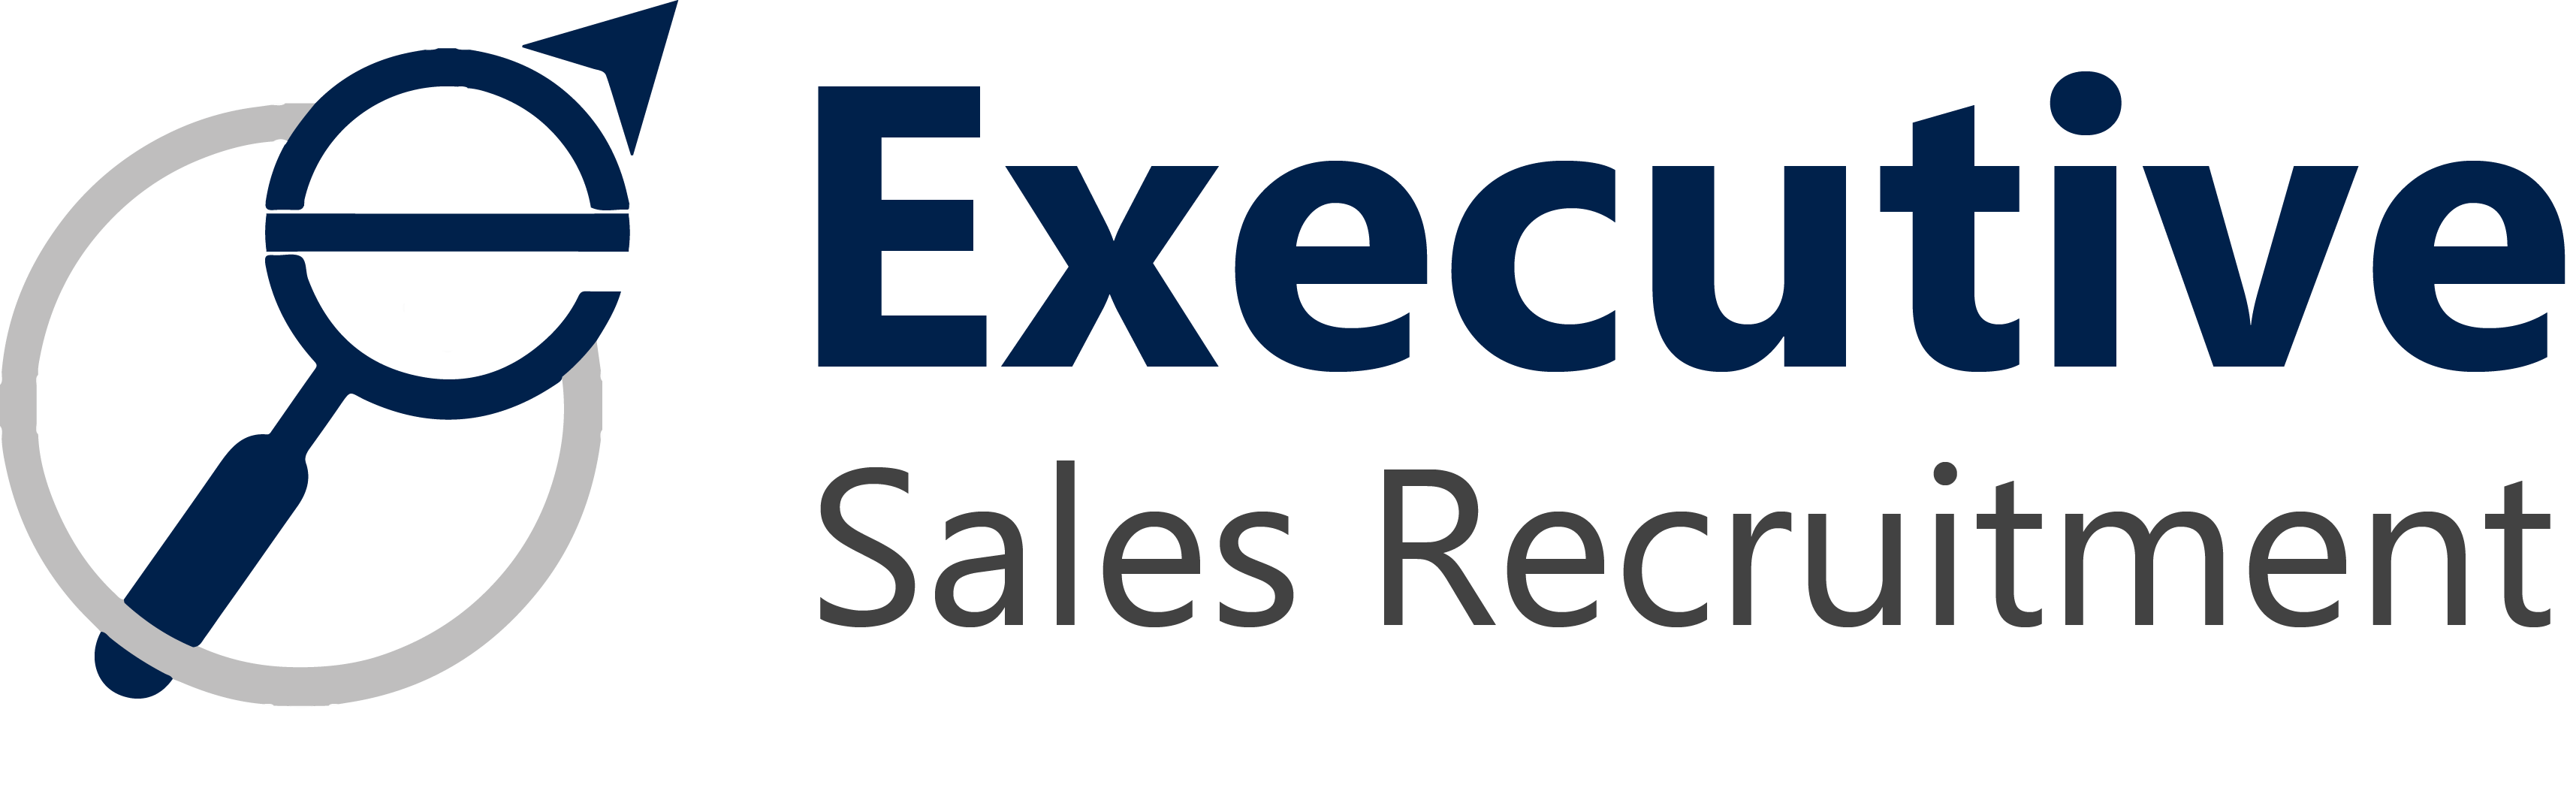 Executive Logo - Executive Sales Recruitment